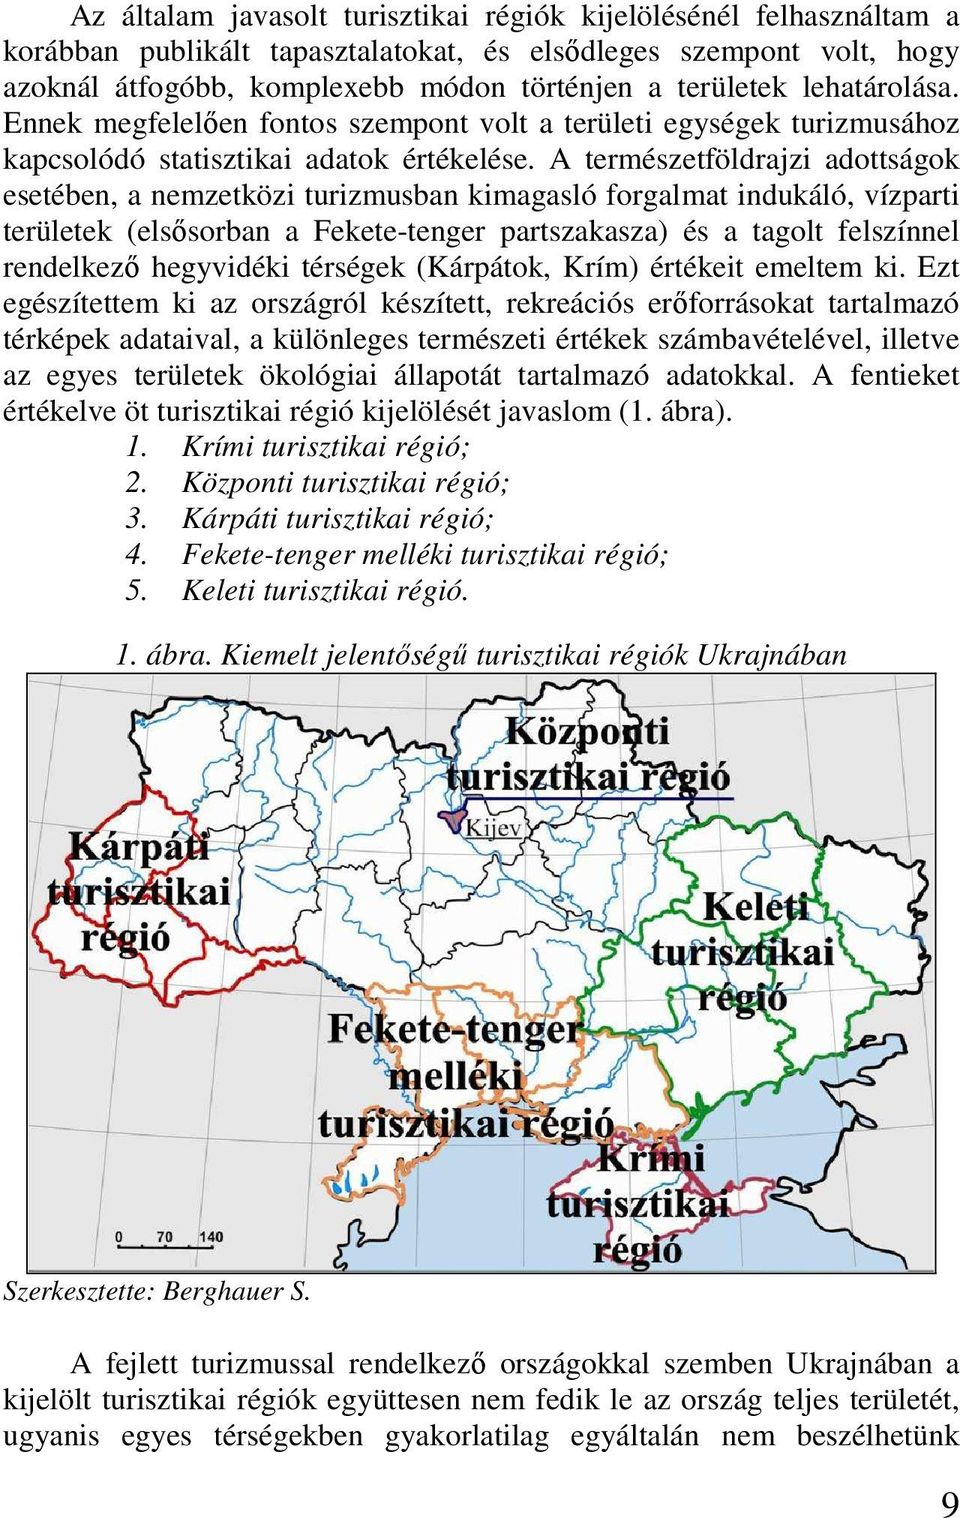 A természetföldrajzi adottságok esetében, a nemzetközi turizmusban kimagasló forgalmat indukáló, vízparti területek (elsısorban a Fekete-tenger partszakasza) és a tagolt felszínnel rendelkezı